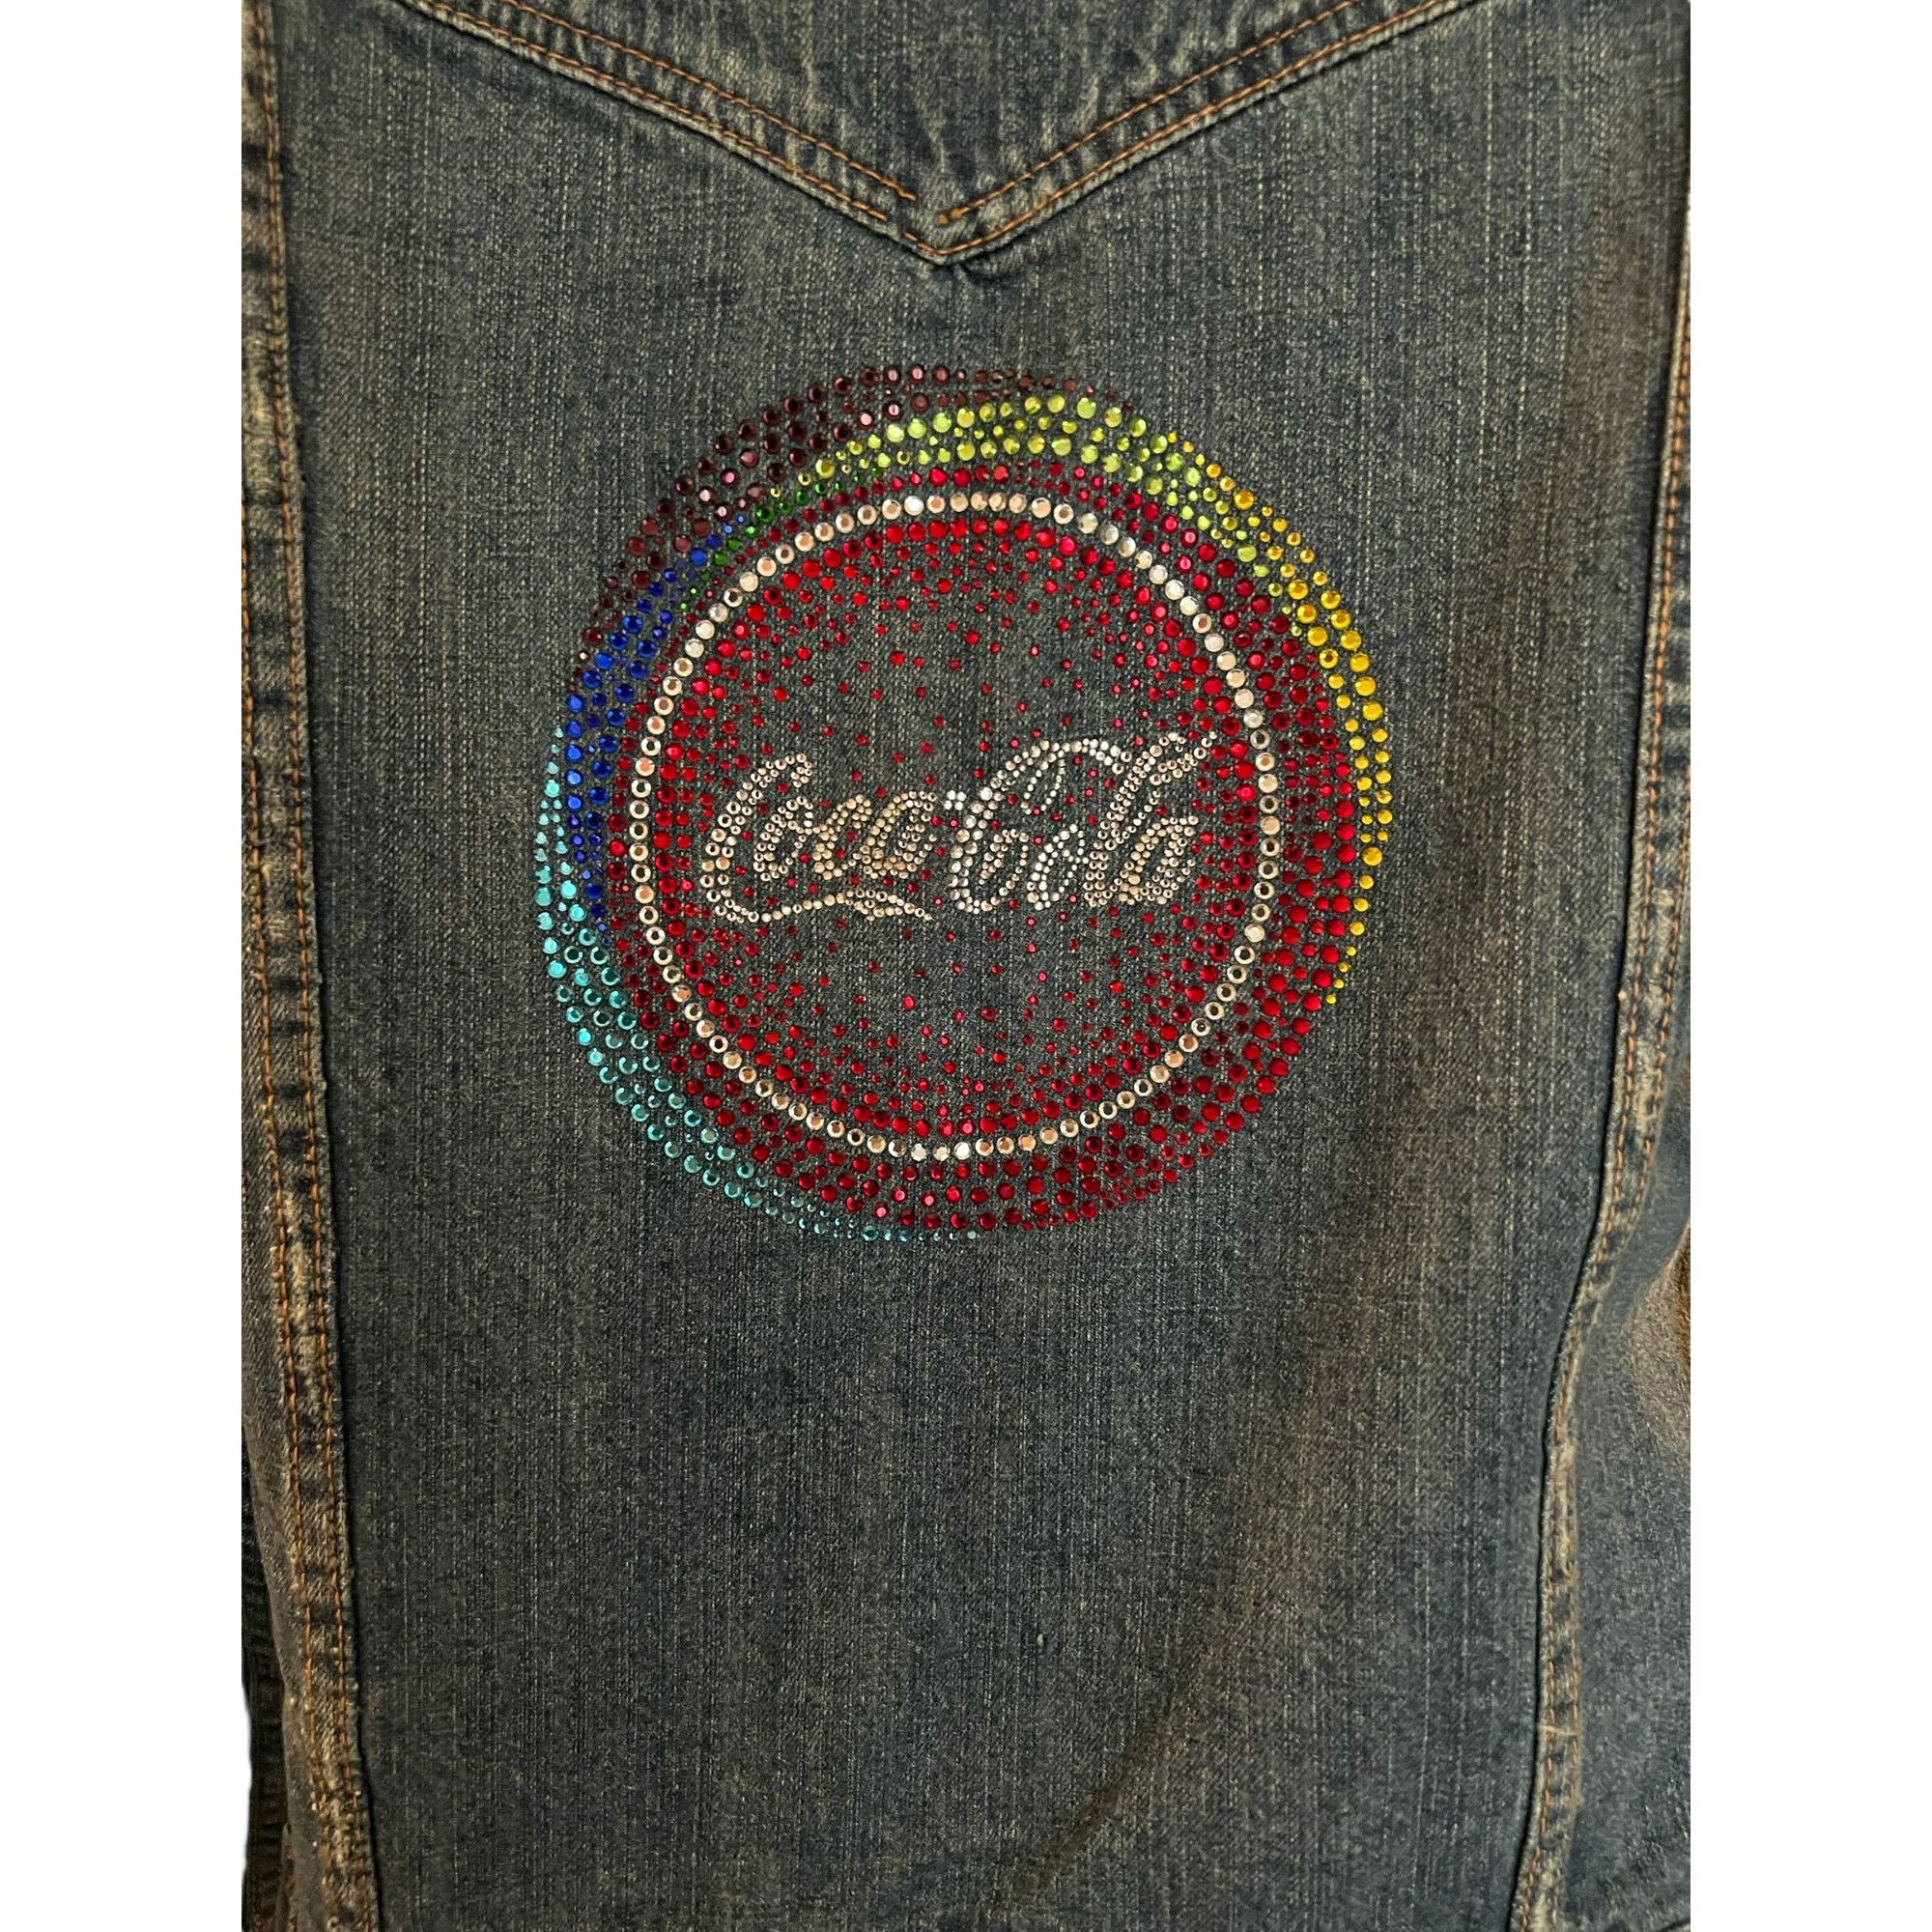 Coca Cola VTG Coca Cola Jean Jacket Colorful Logo Long Sleeve Button M Size M / US 6-8 / IT 42-44 - 9 Thumbnail